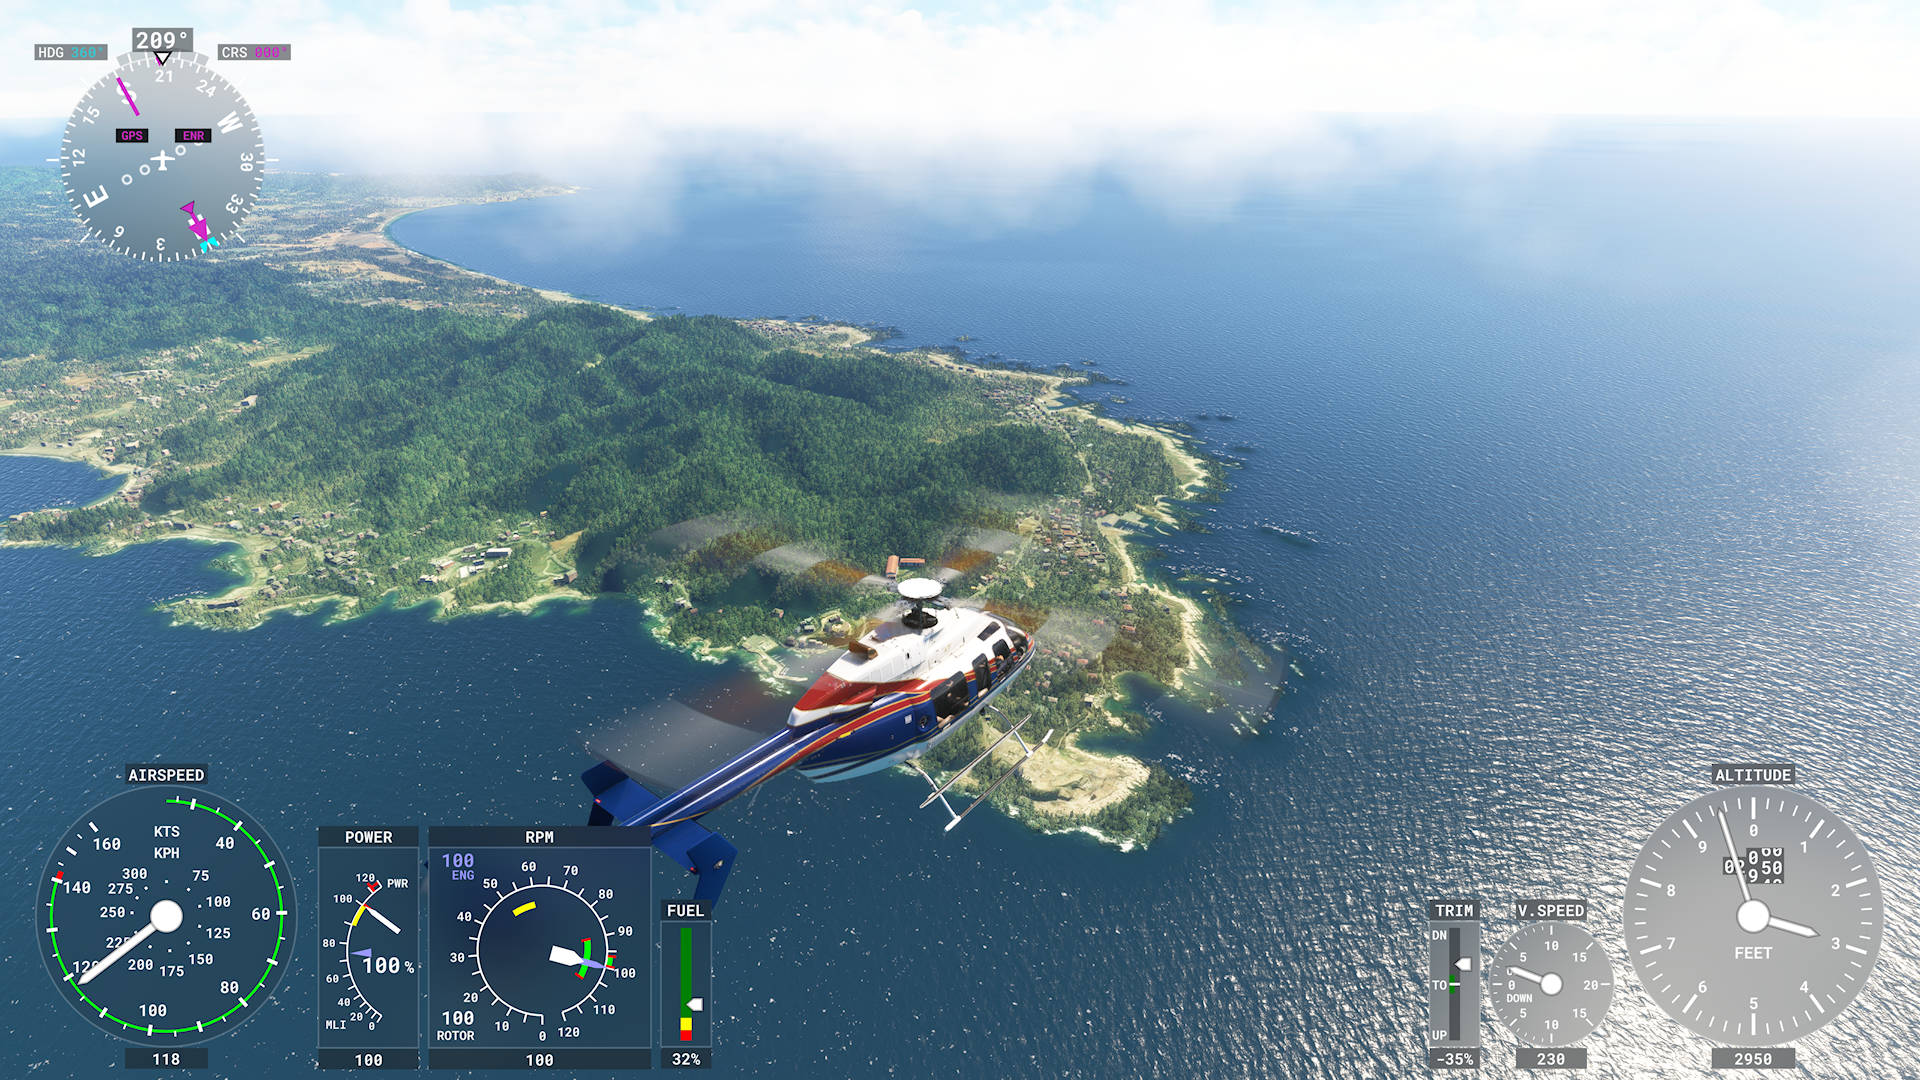 館山、洲崎近くを飛行するヘリコプター、BELL